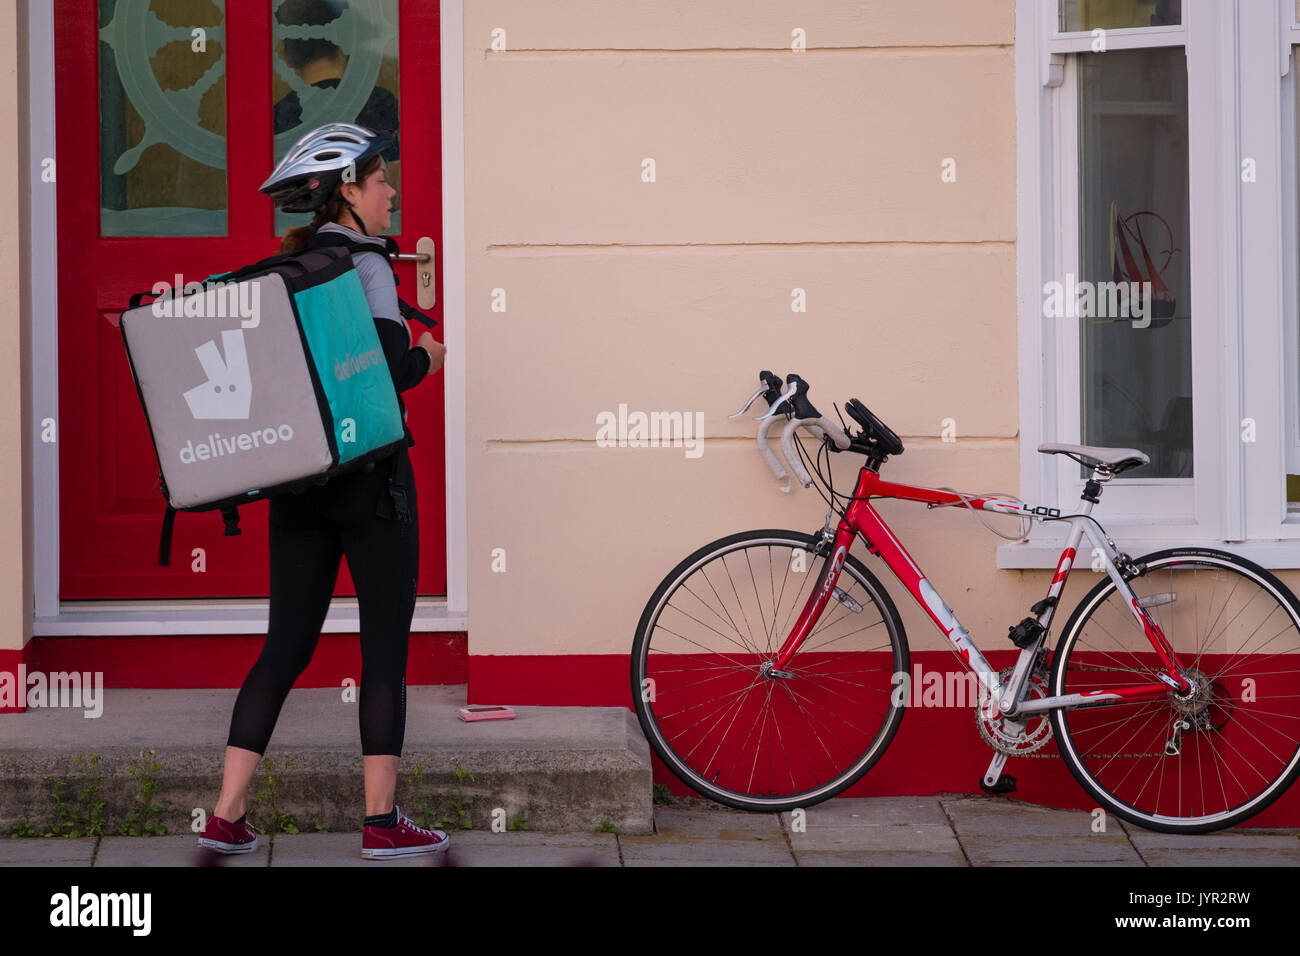 Der Gig Wirtschaft in Großbritannien: Eine junge-Frau Mädchen beschäftigt mit ihrem Fahrrad für Deliveroo, die Speisen zum Mitnehmen Lieferservice Stockfoto